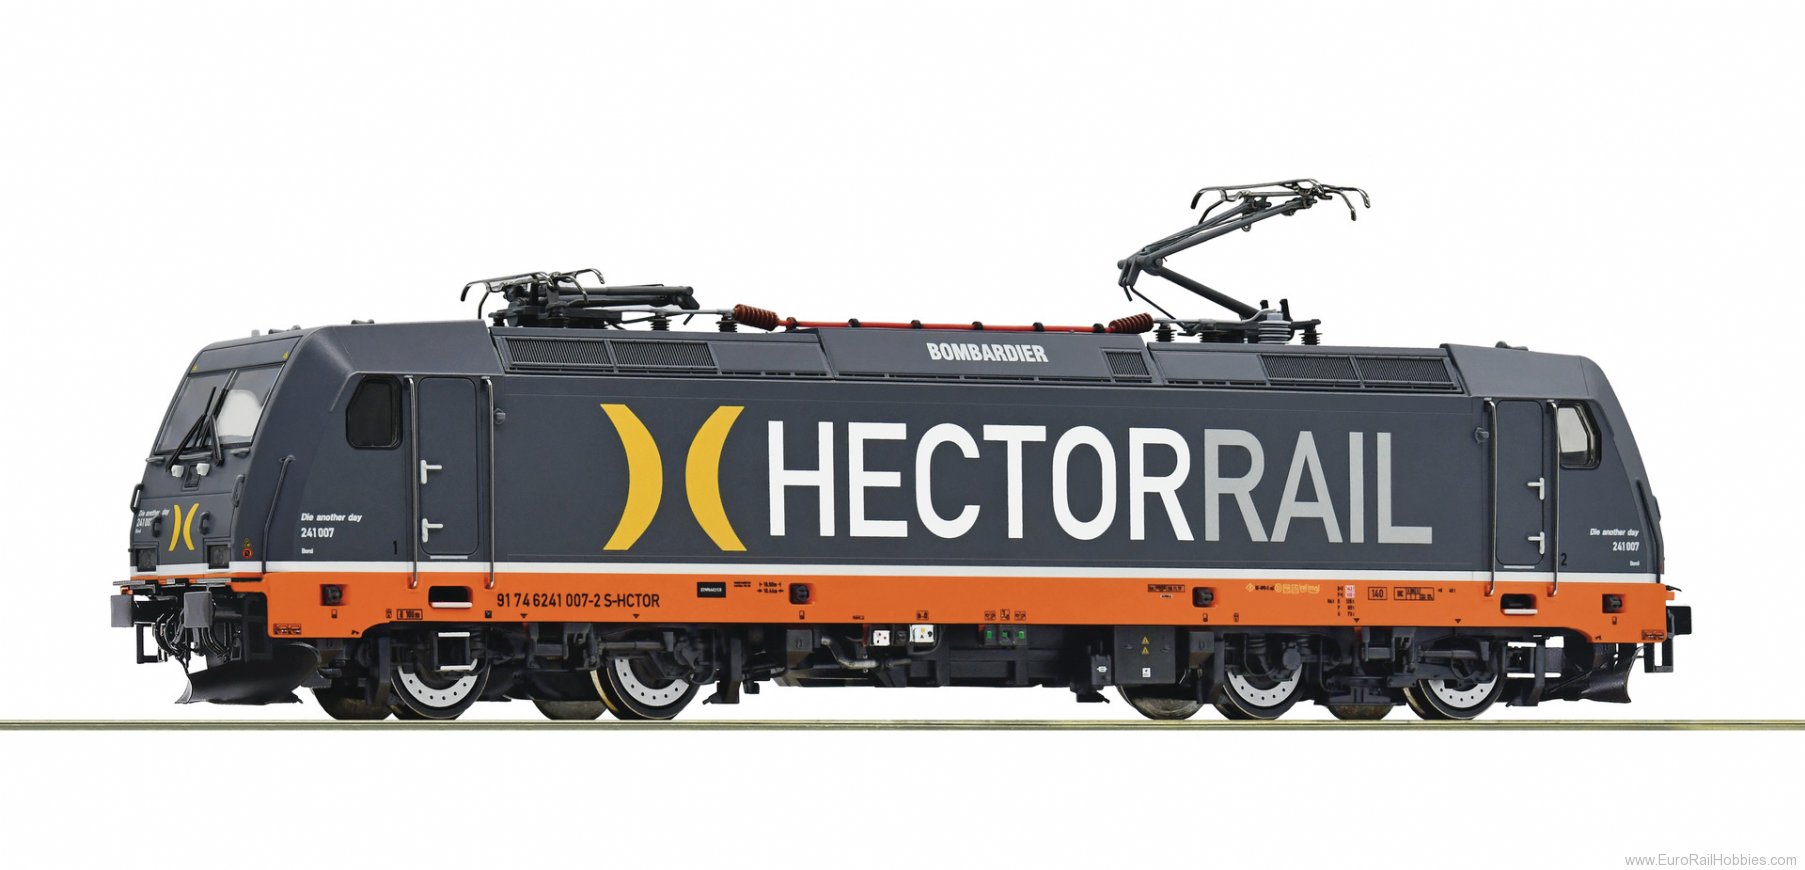 Roco 73947 Hectorrail Electric locomotive 241 007-2 